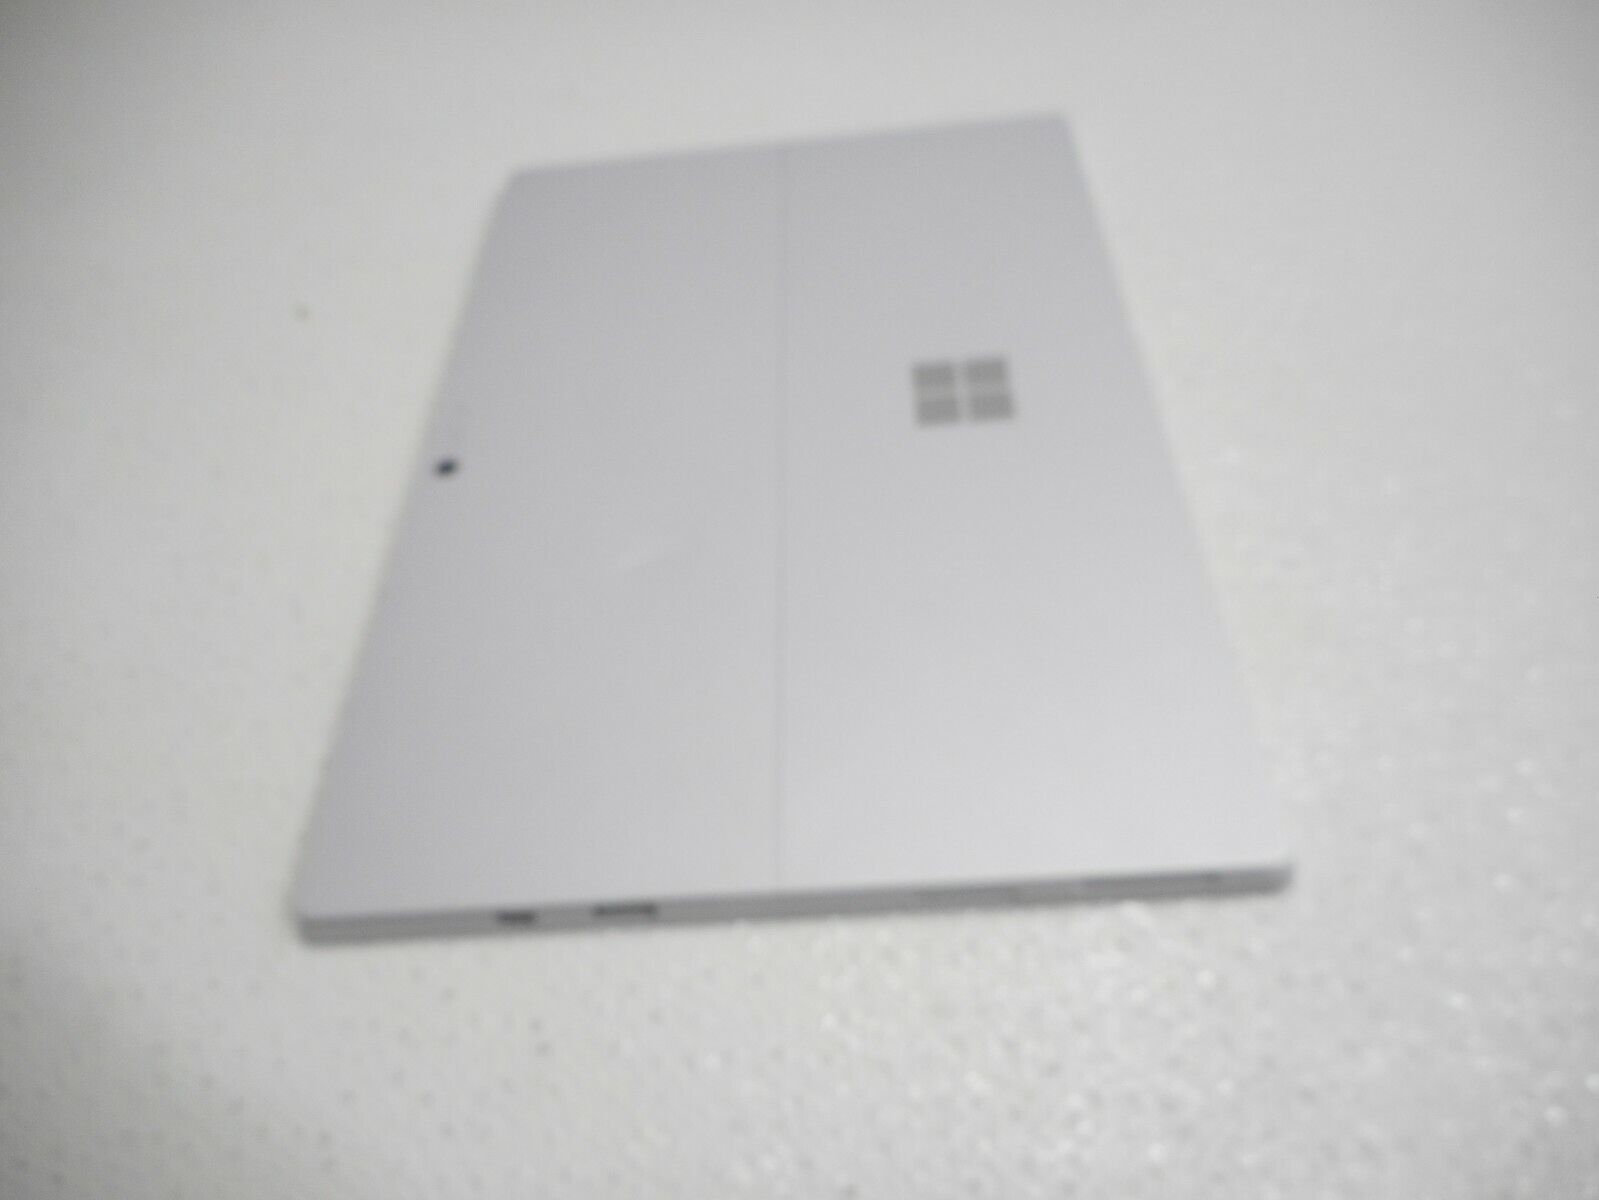 Microsoft Surface Pro 4 1724 12.3